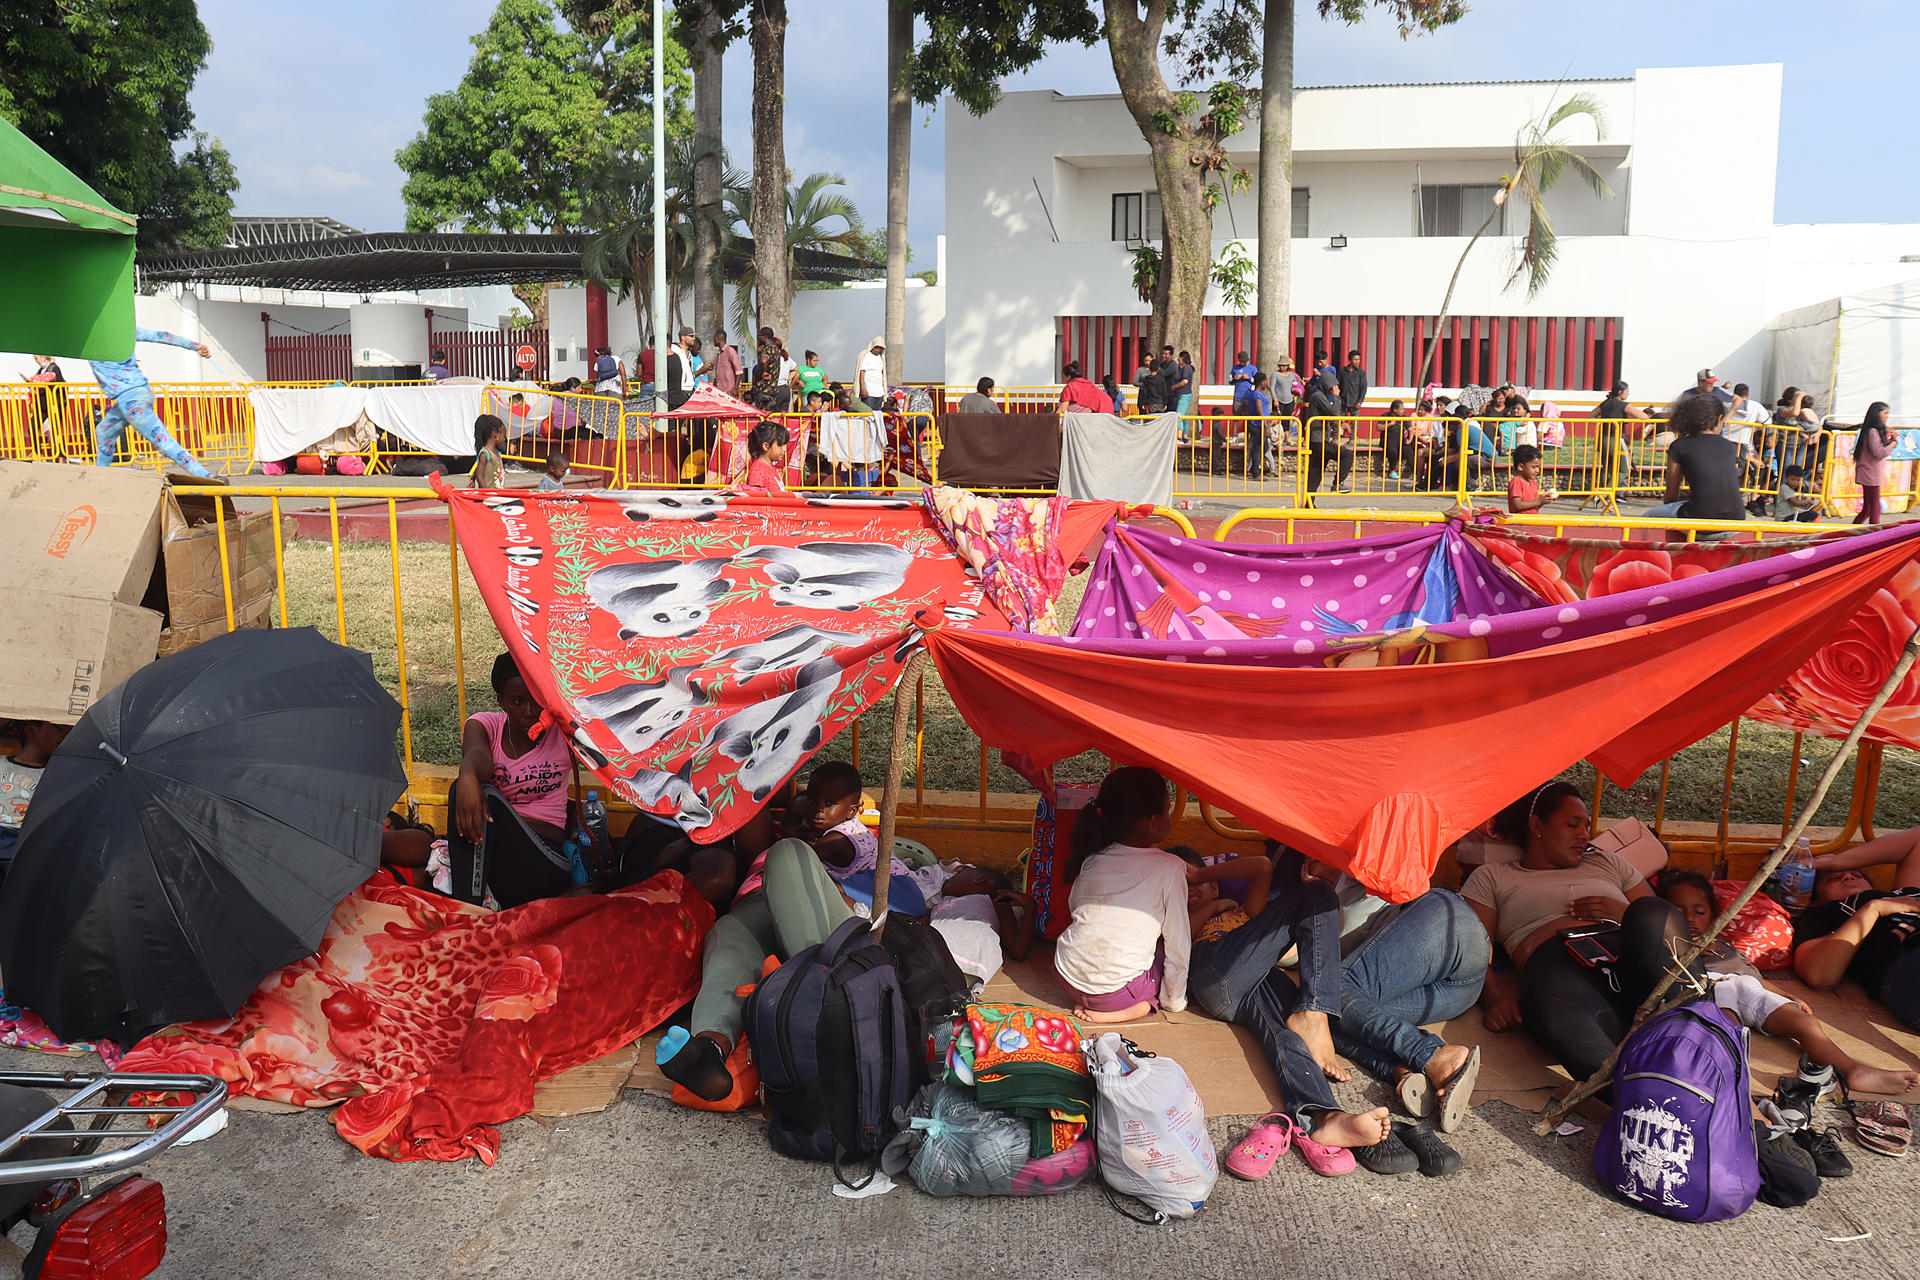 Grupos de migrantes instalan un campamento improvisado afuera de las instalaciones del Instituto Nacional de Migración (INM) hoy, en Tapachula, estado de Chiapas (México). EFE/Juan Manuel Blanco
